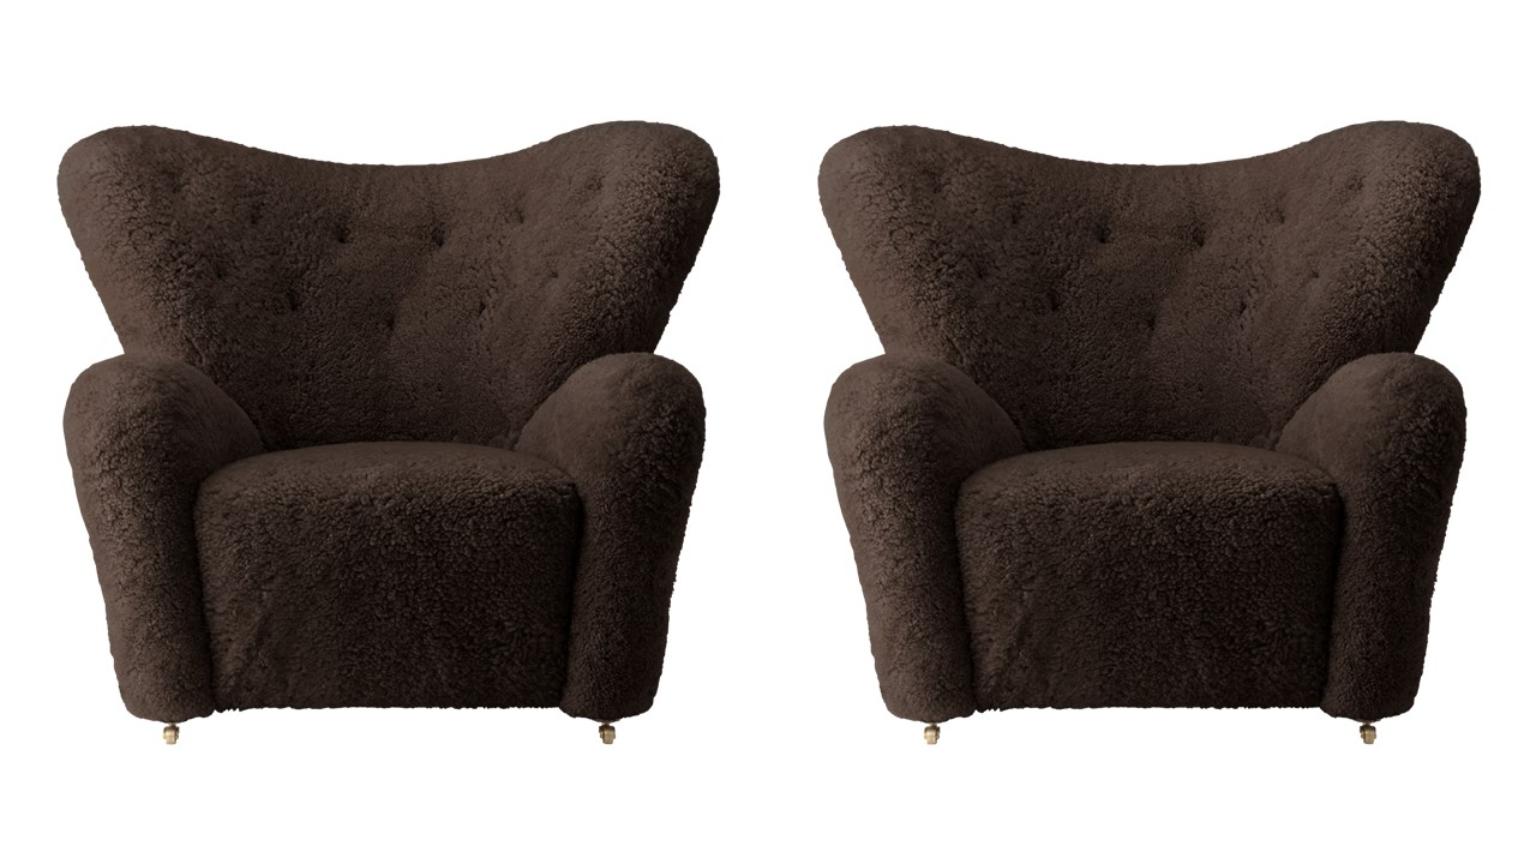 Ensemble de 2 fauteuils en peau de mouton Espresso the tired man lounge chairby Lassen
Dimensions : L 102 x P 87 x H 88 cm 
Matériaux : Peau de mouton

Flemming Lassen a conçu le fauteuil rembourré, The Tired Man, pour le concours de la Guild de